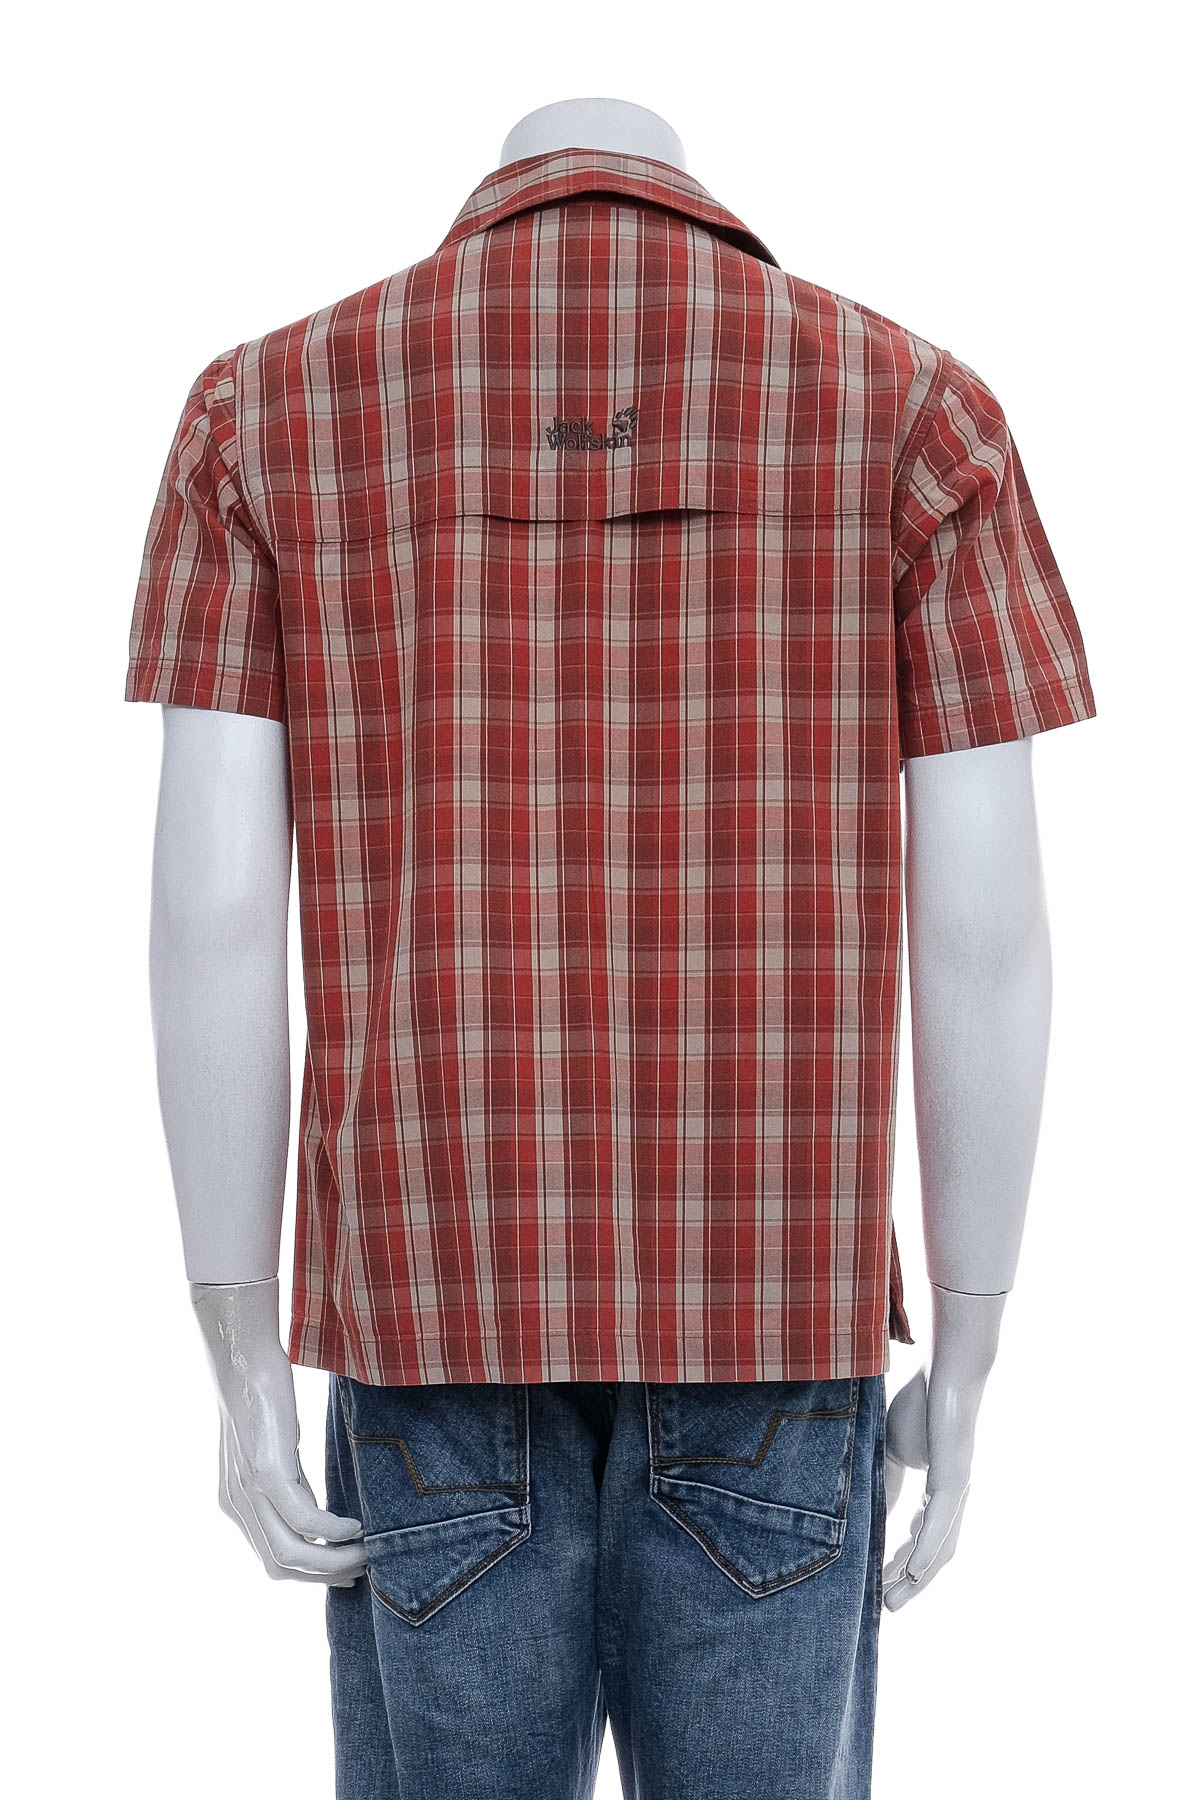 Ανδρικό πουκάμισο - Jack Wolfskin - 1